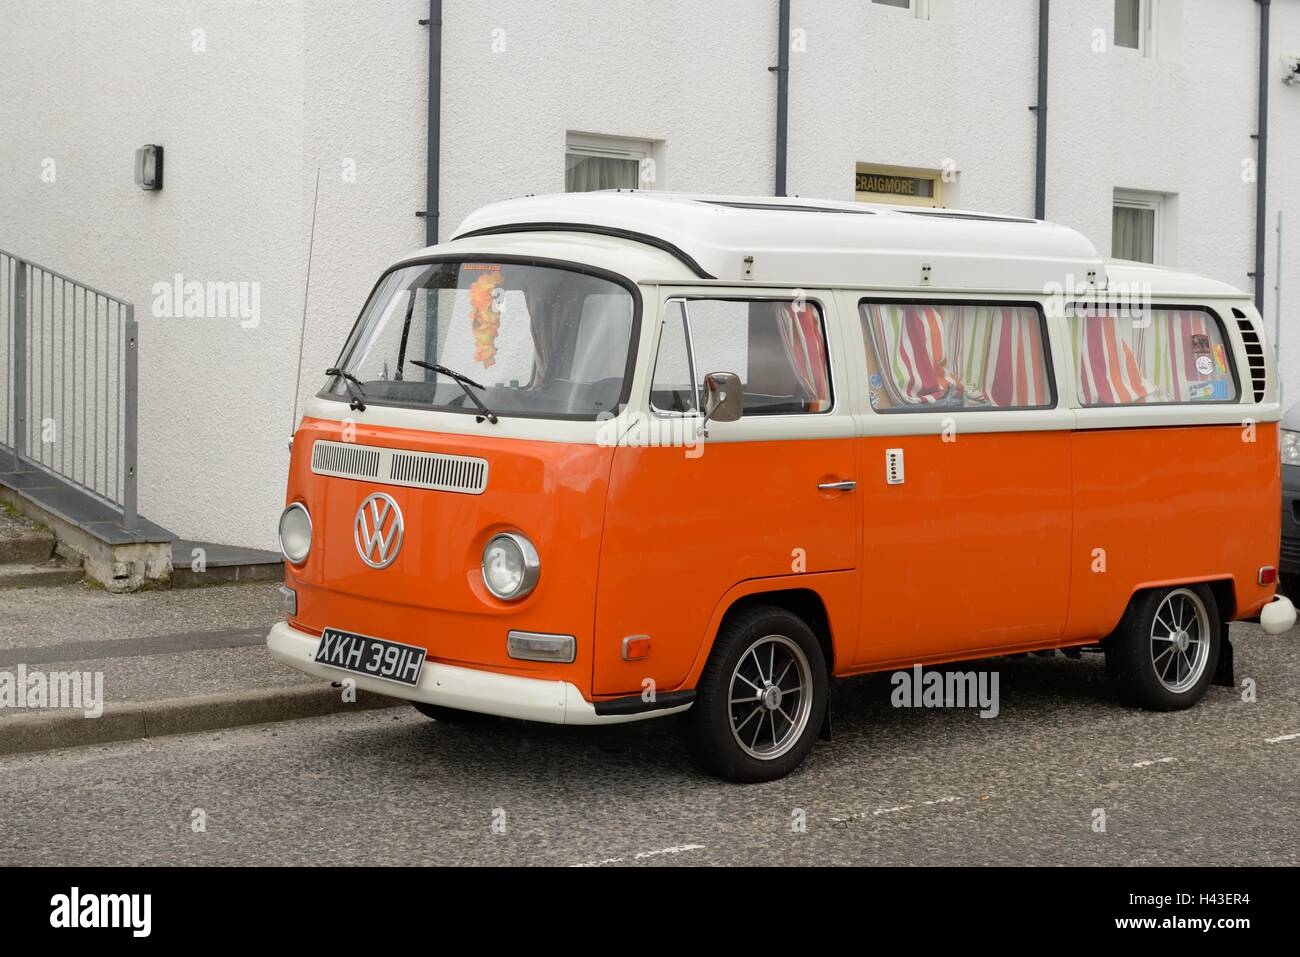 volkswagen camper van for sale scotland